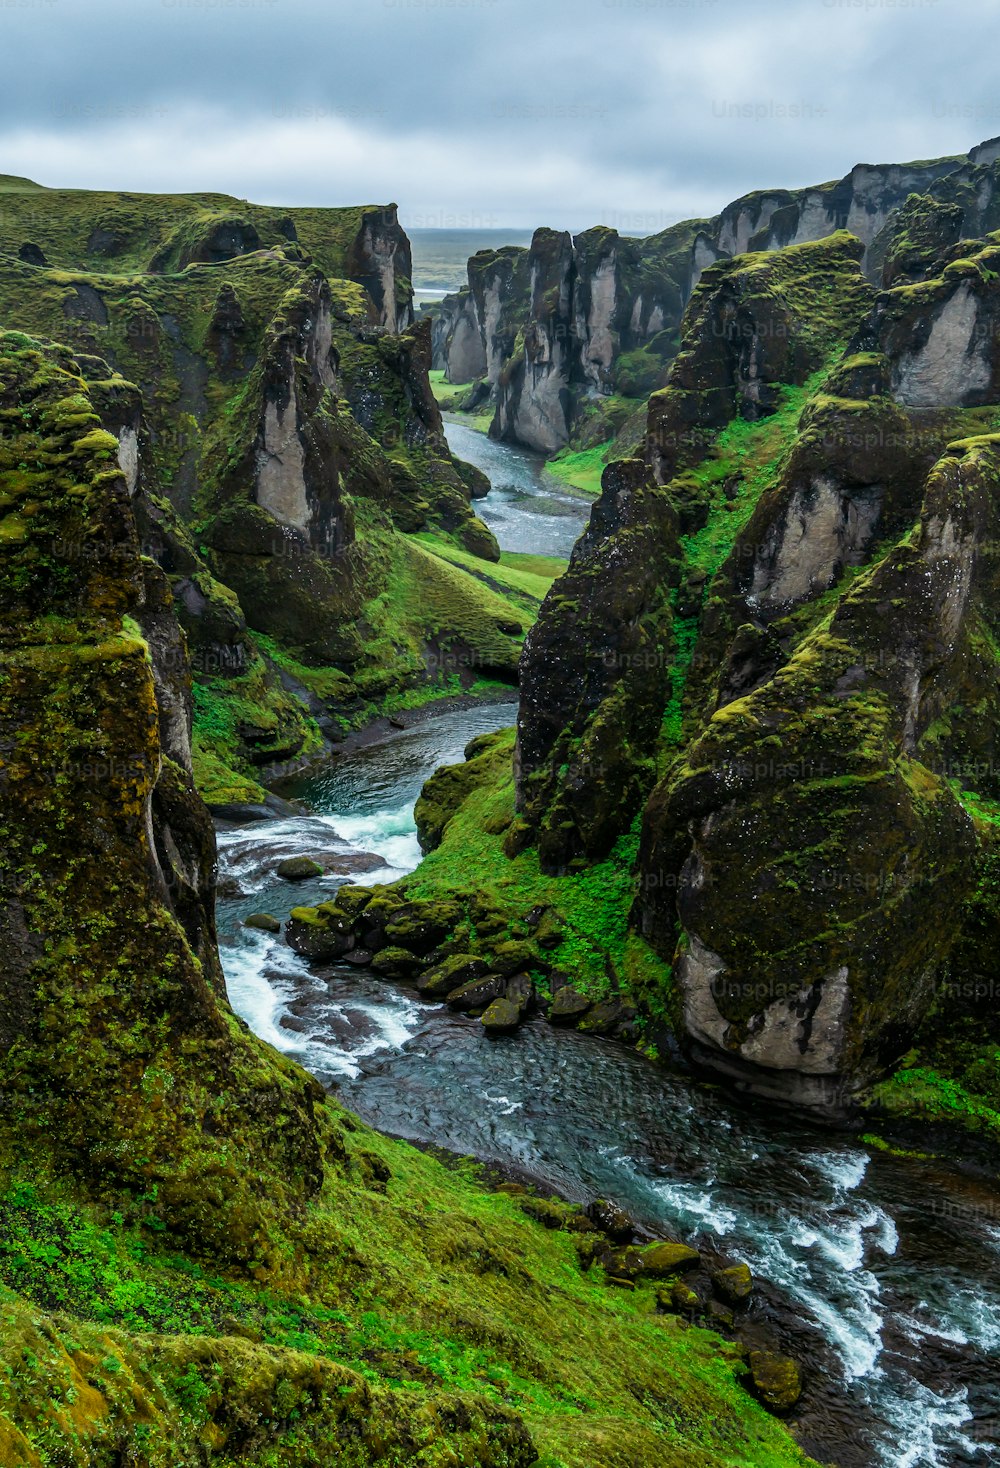 Paisaje único de Fjadrargljufur en Islandia. Destino turístico de primer orden. El cañón de Fjadrargljufur es un enorme cañón de unos 100 metros de profundidad y unos 2 kilómetros de largo, situado en el sureste de Islandia.